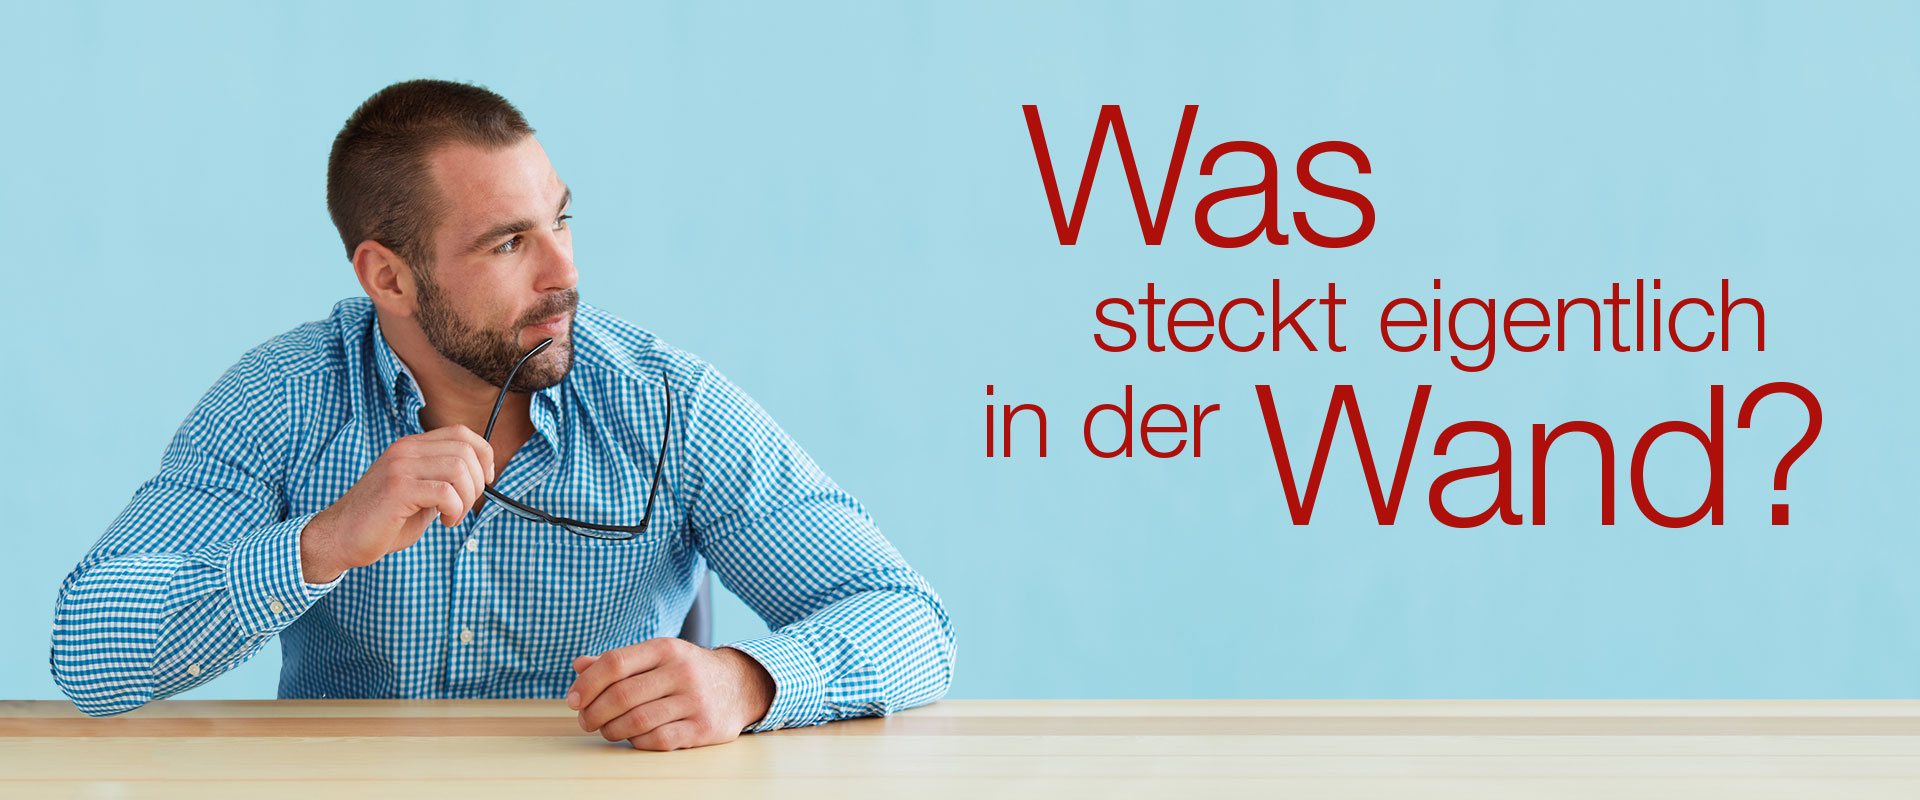 Wienerberger-Kampagne "Was steckt eigentlich in der Wand?"